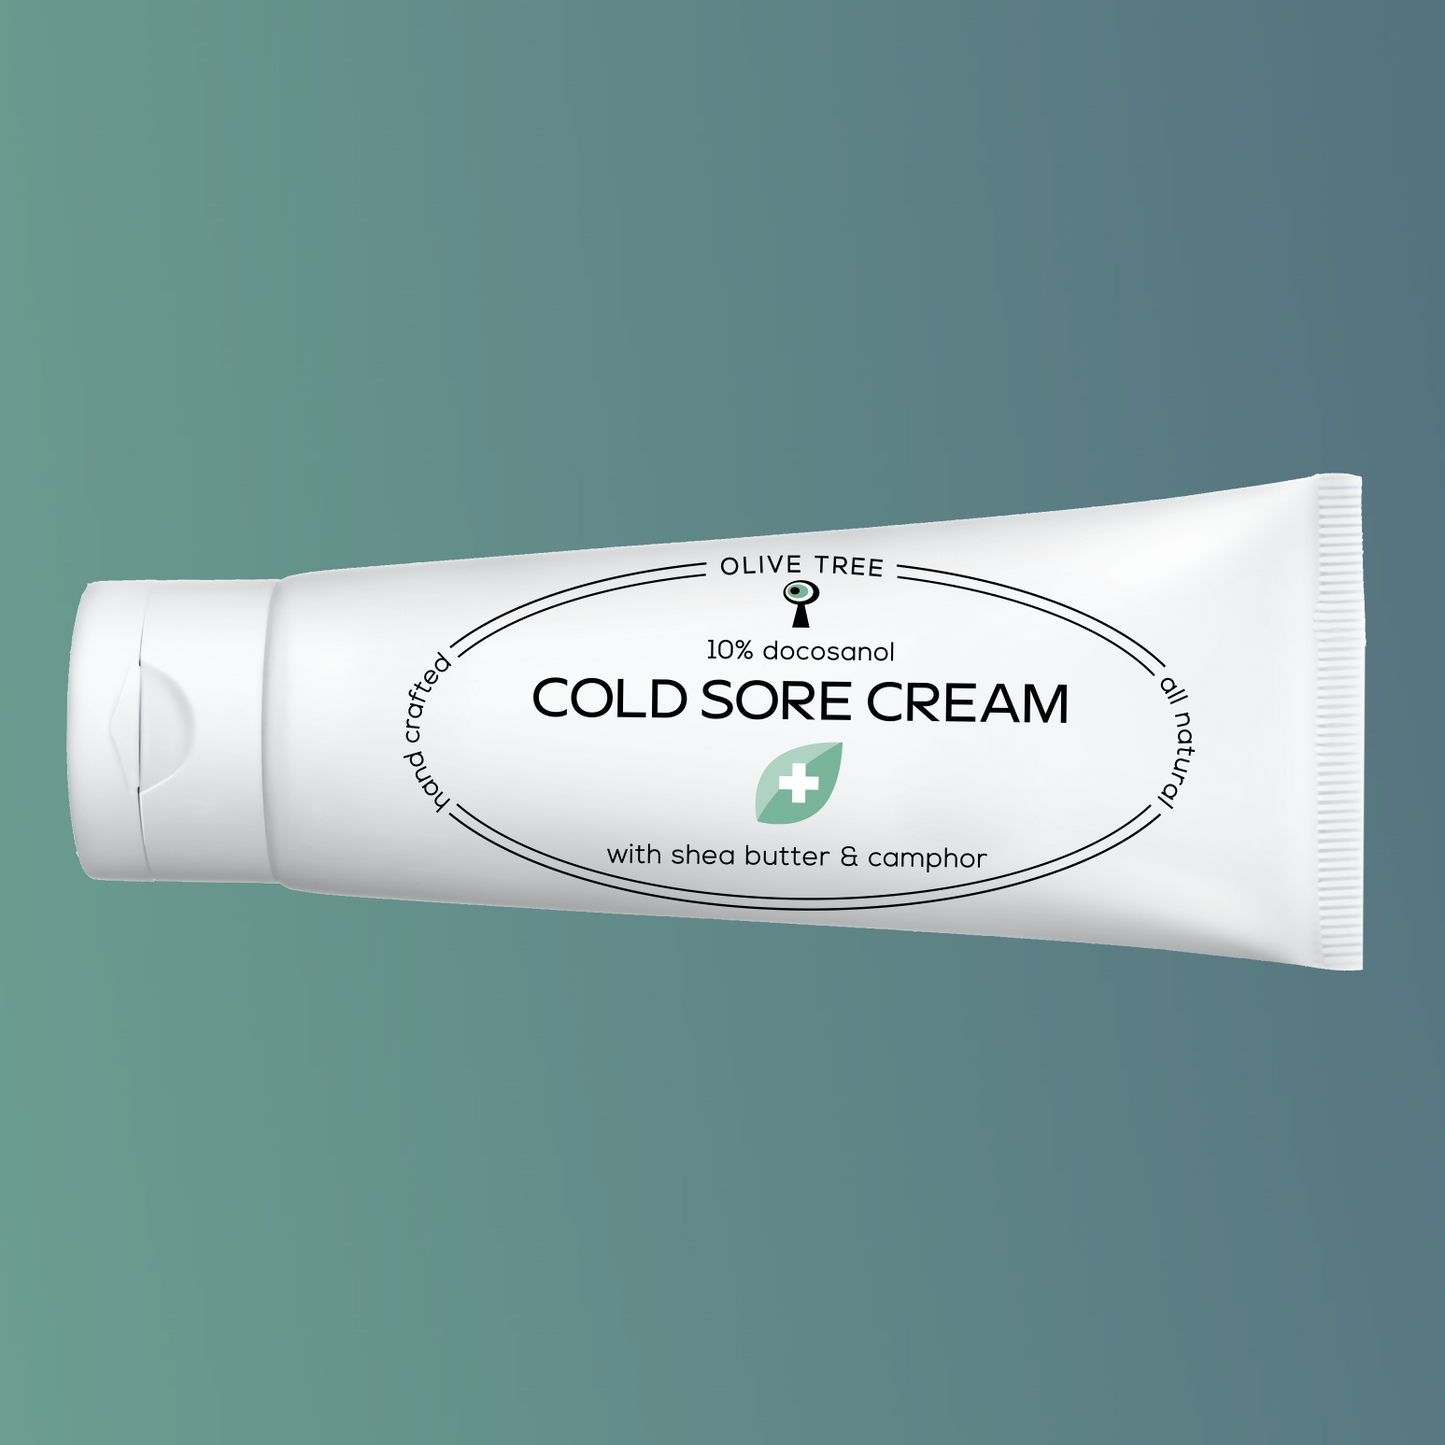 Cold Sore Cream